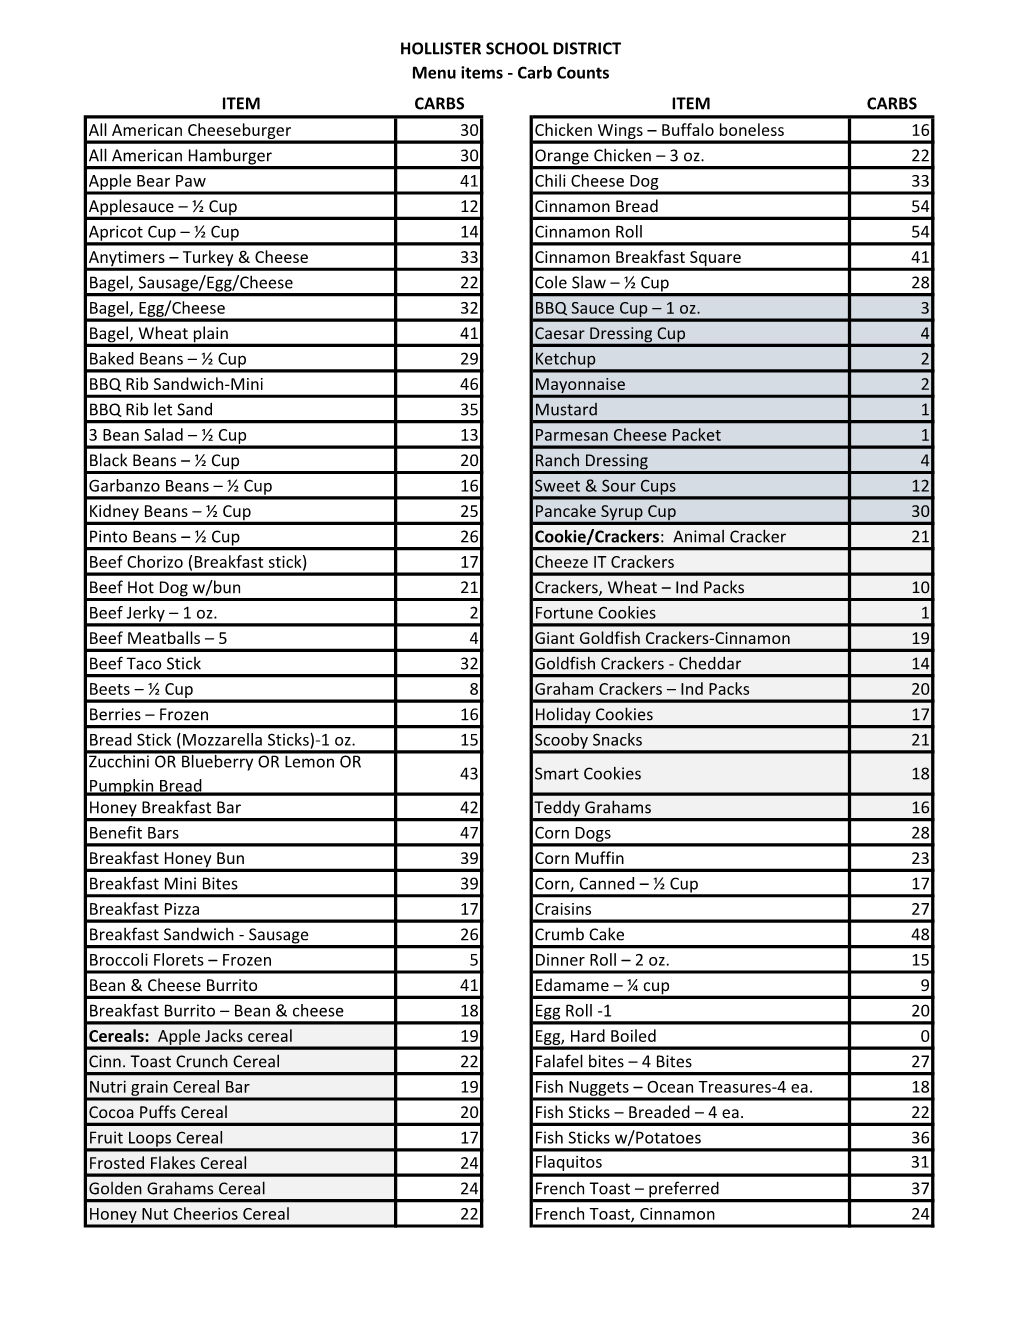 HSD Carb Count List.Pdf